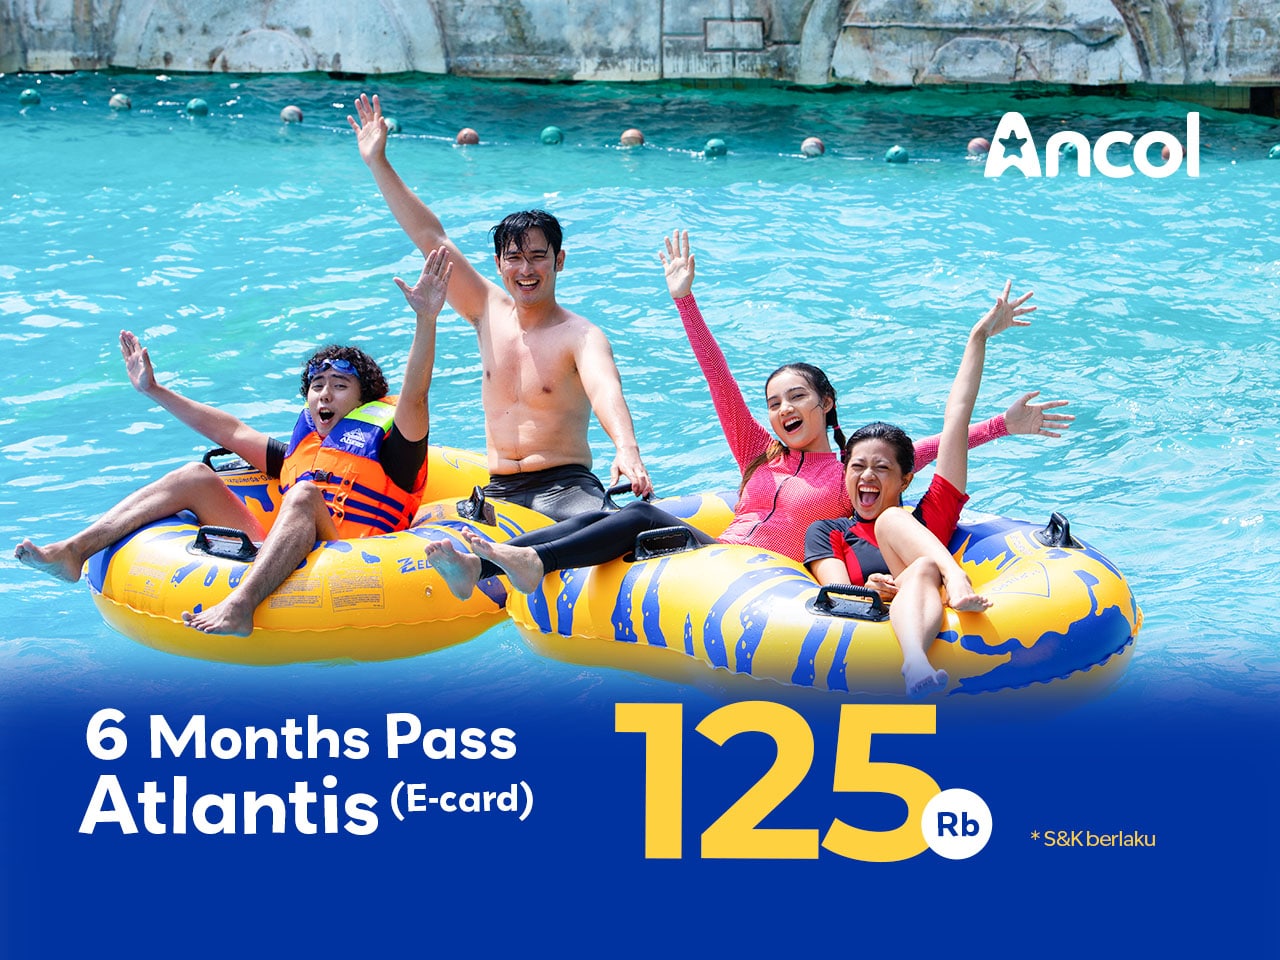 6 Month Pass Atlantis! Gratis Liburan di Atlantis 6 Bulan (Tanpa Tiket Masuk Ancol)